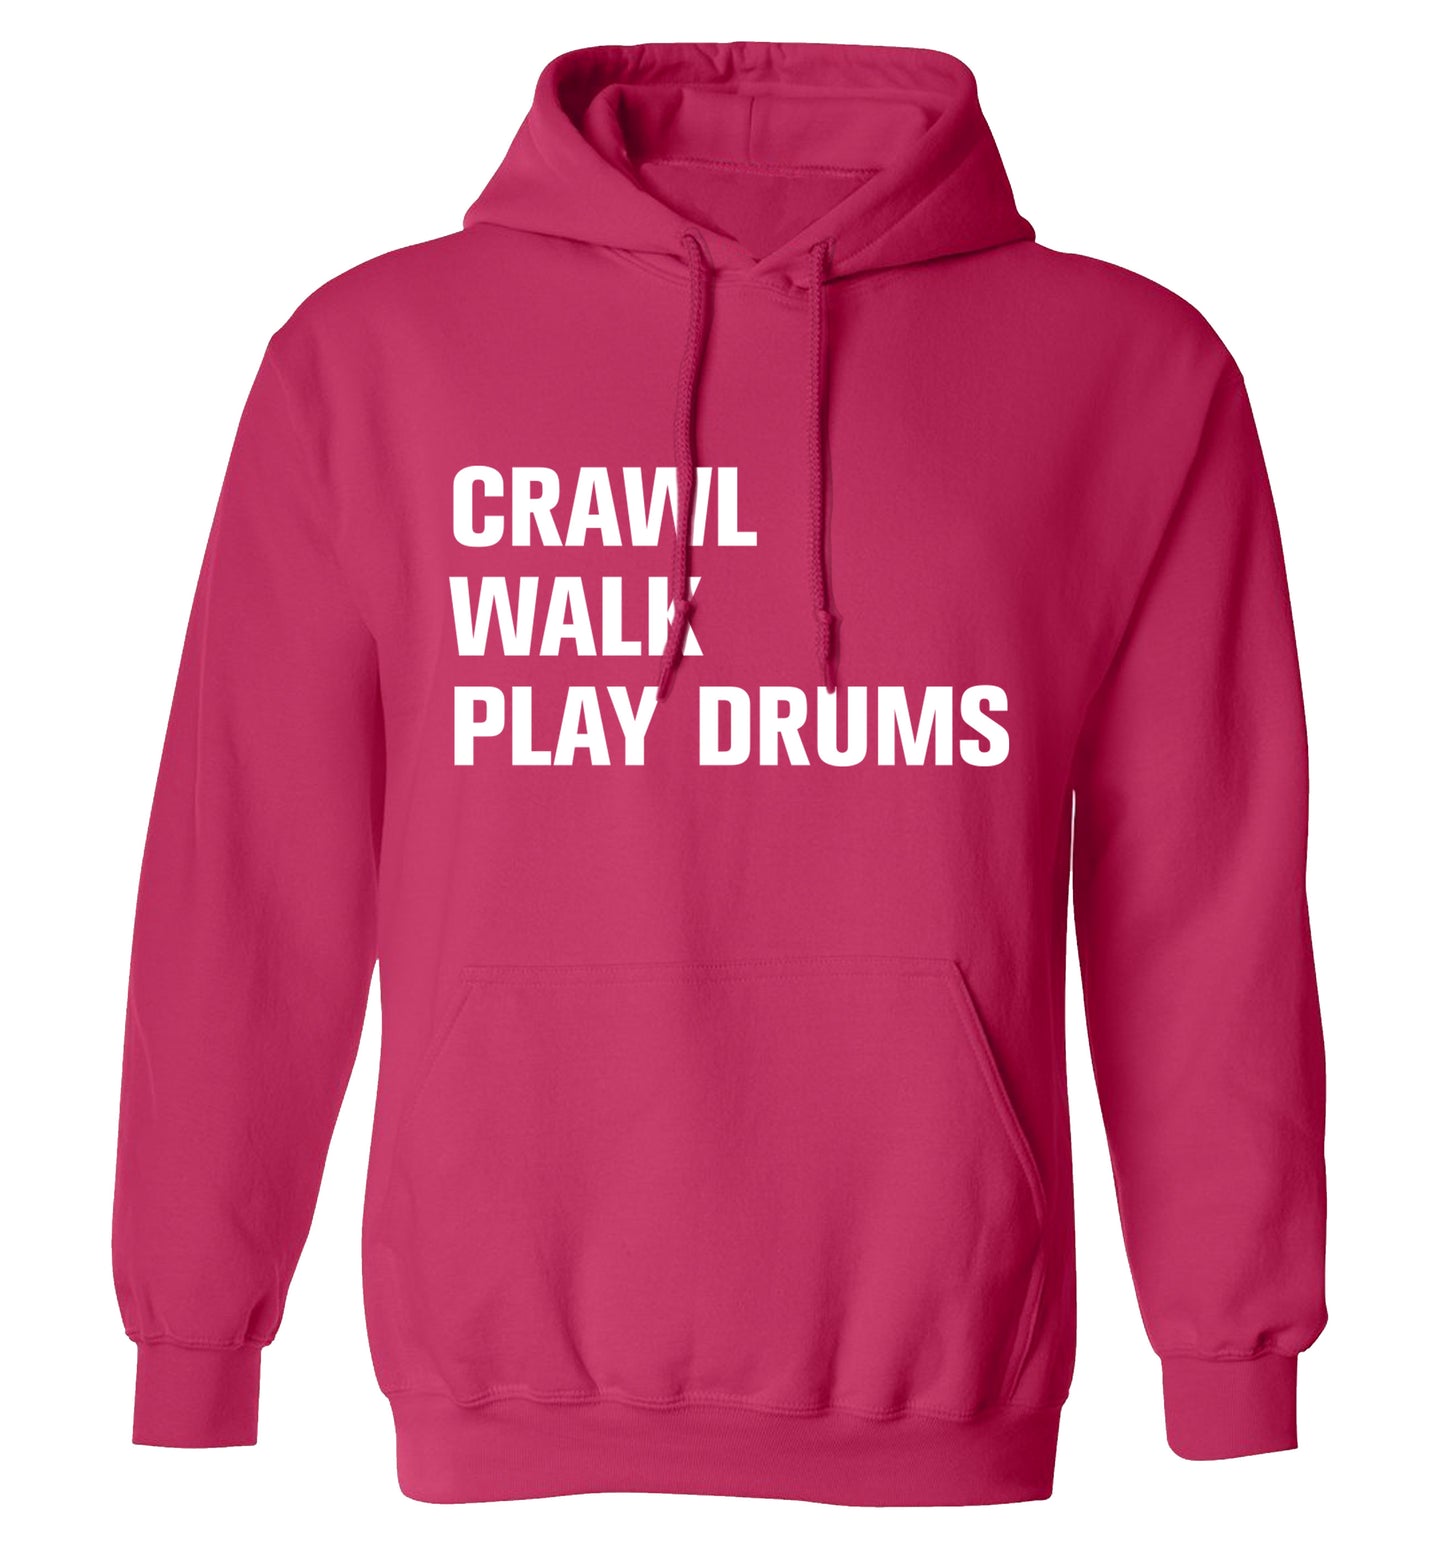 Crawl walk play drums adults unisex pink hoodie 2XL